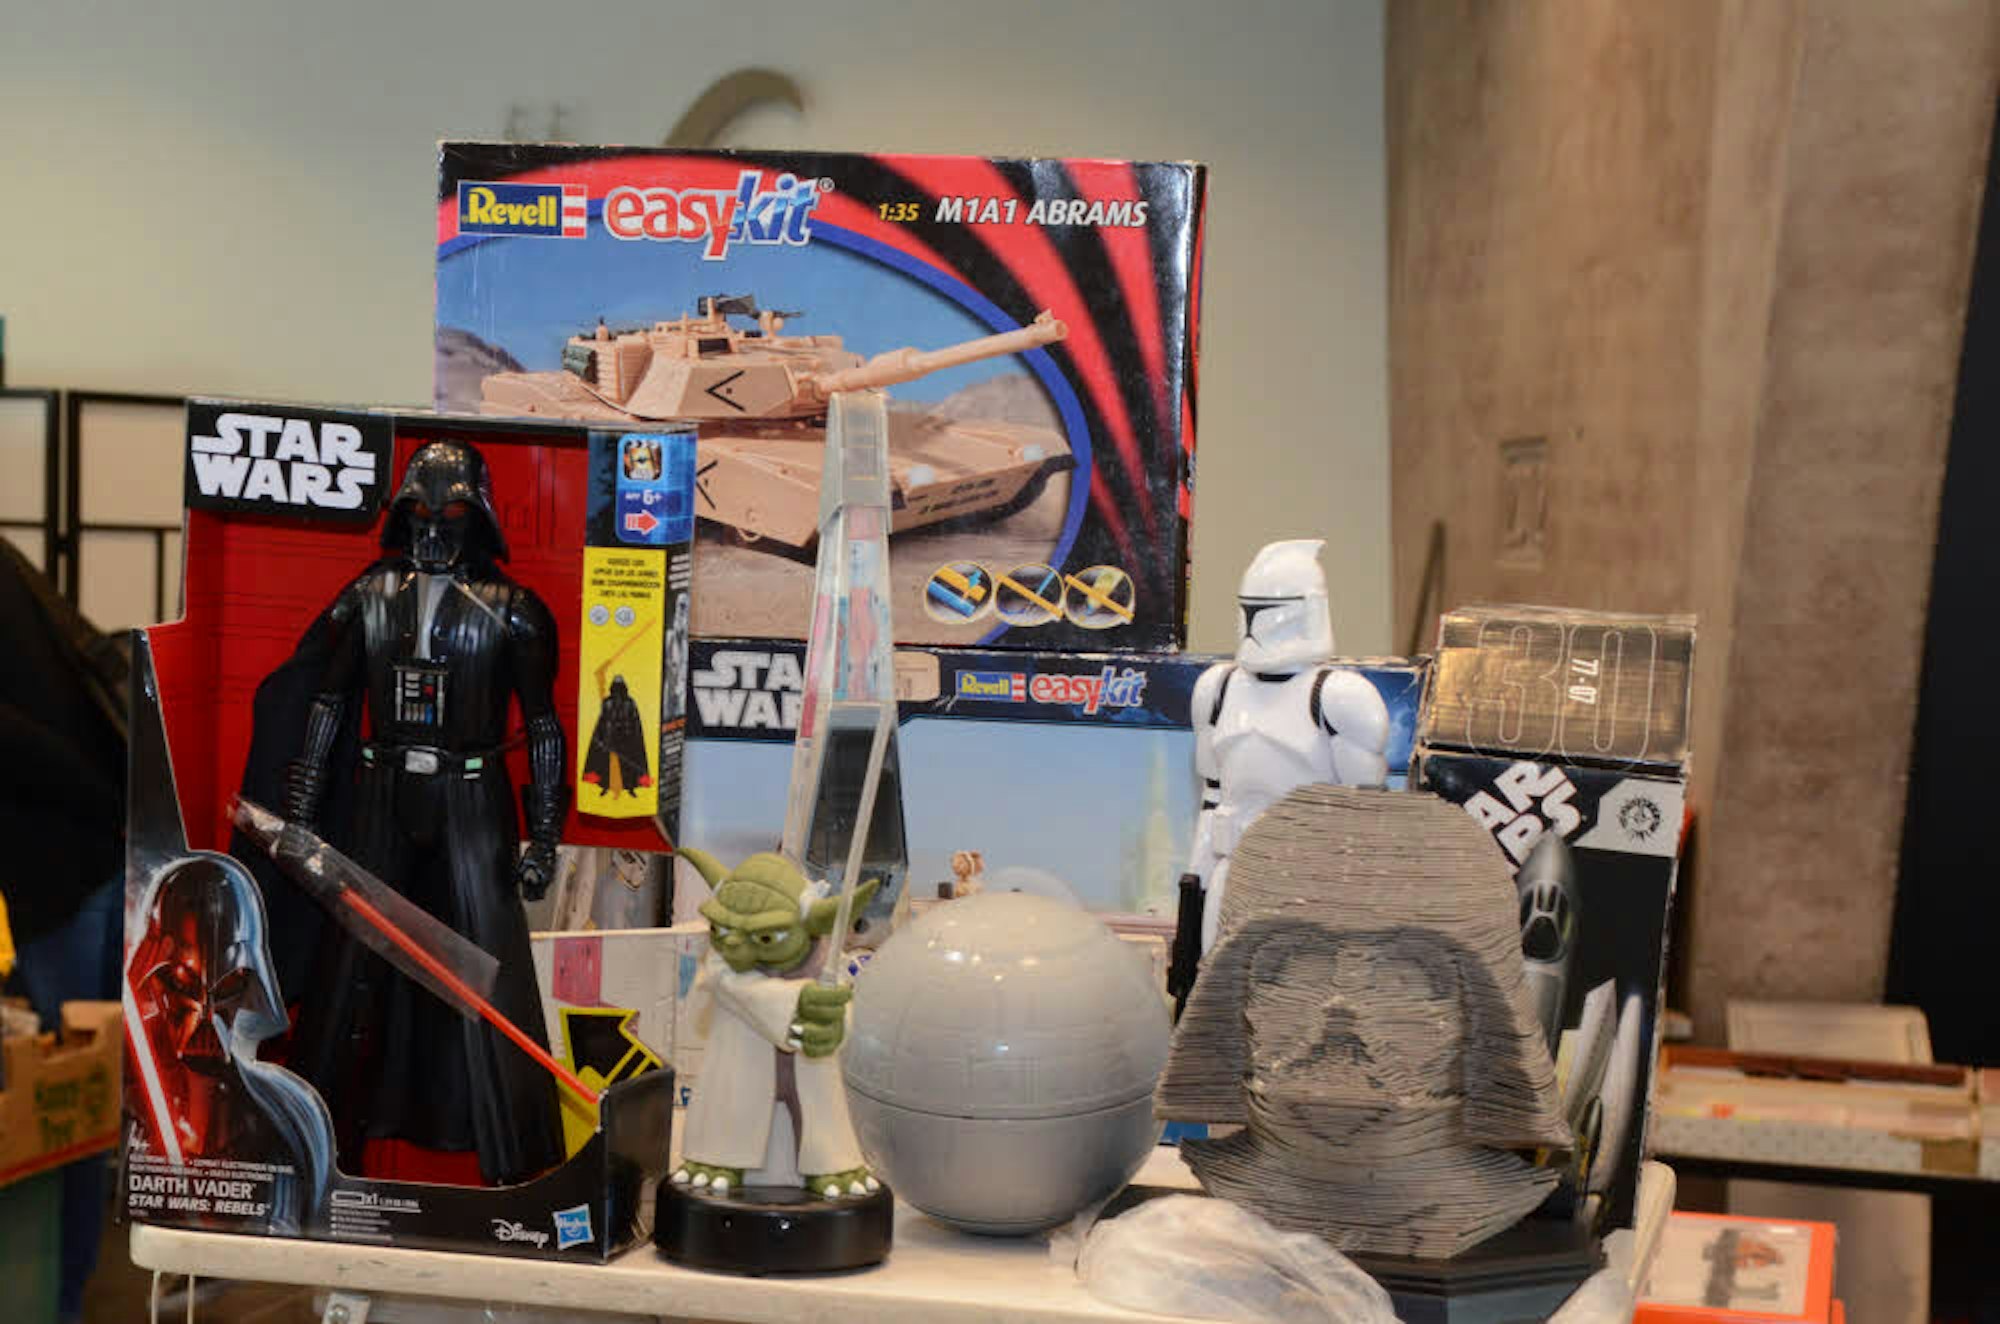 Vereinzelt sind auch Star Wars Sammelobjekte zu sehen.